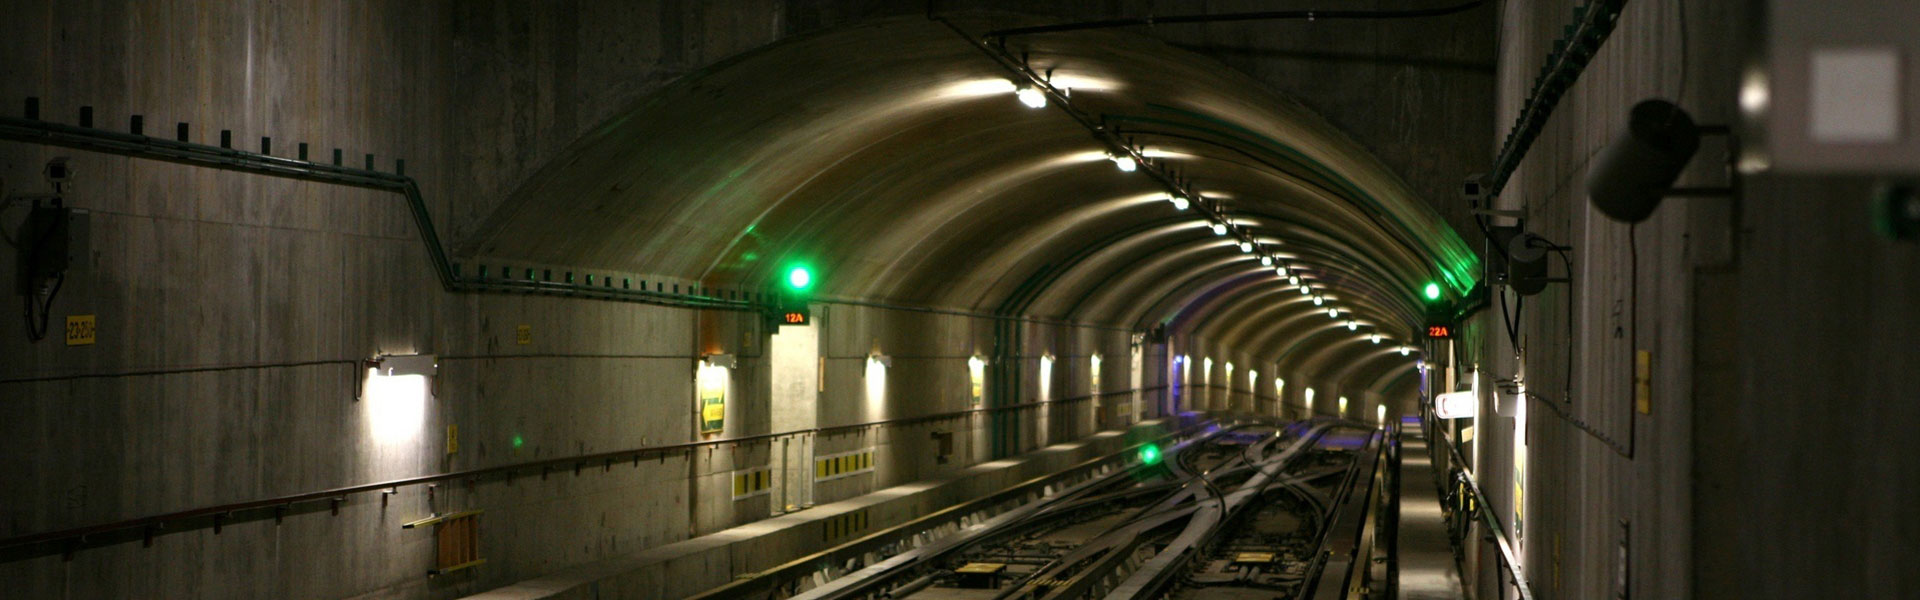 Выполняемые работы - Гидроизоляция тоннелей